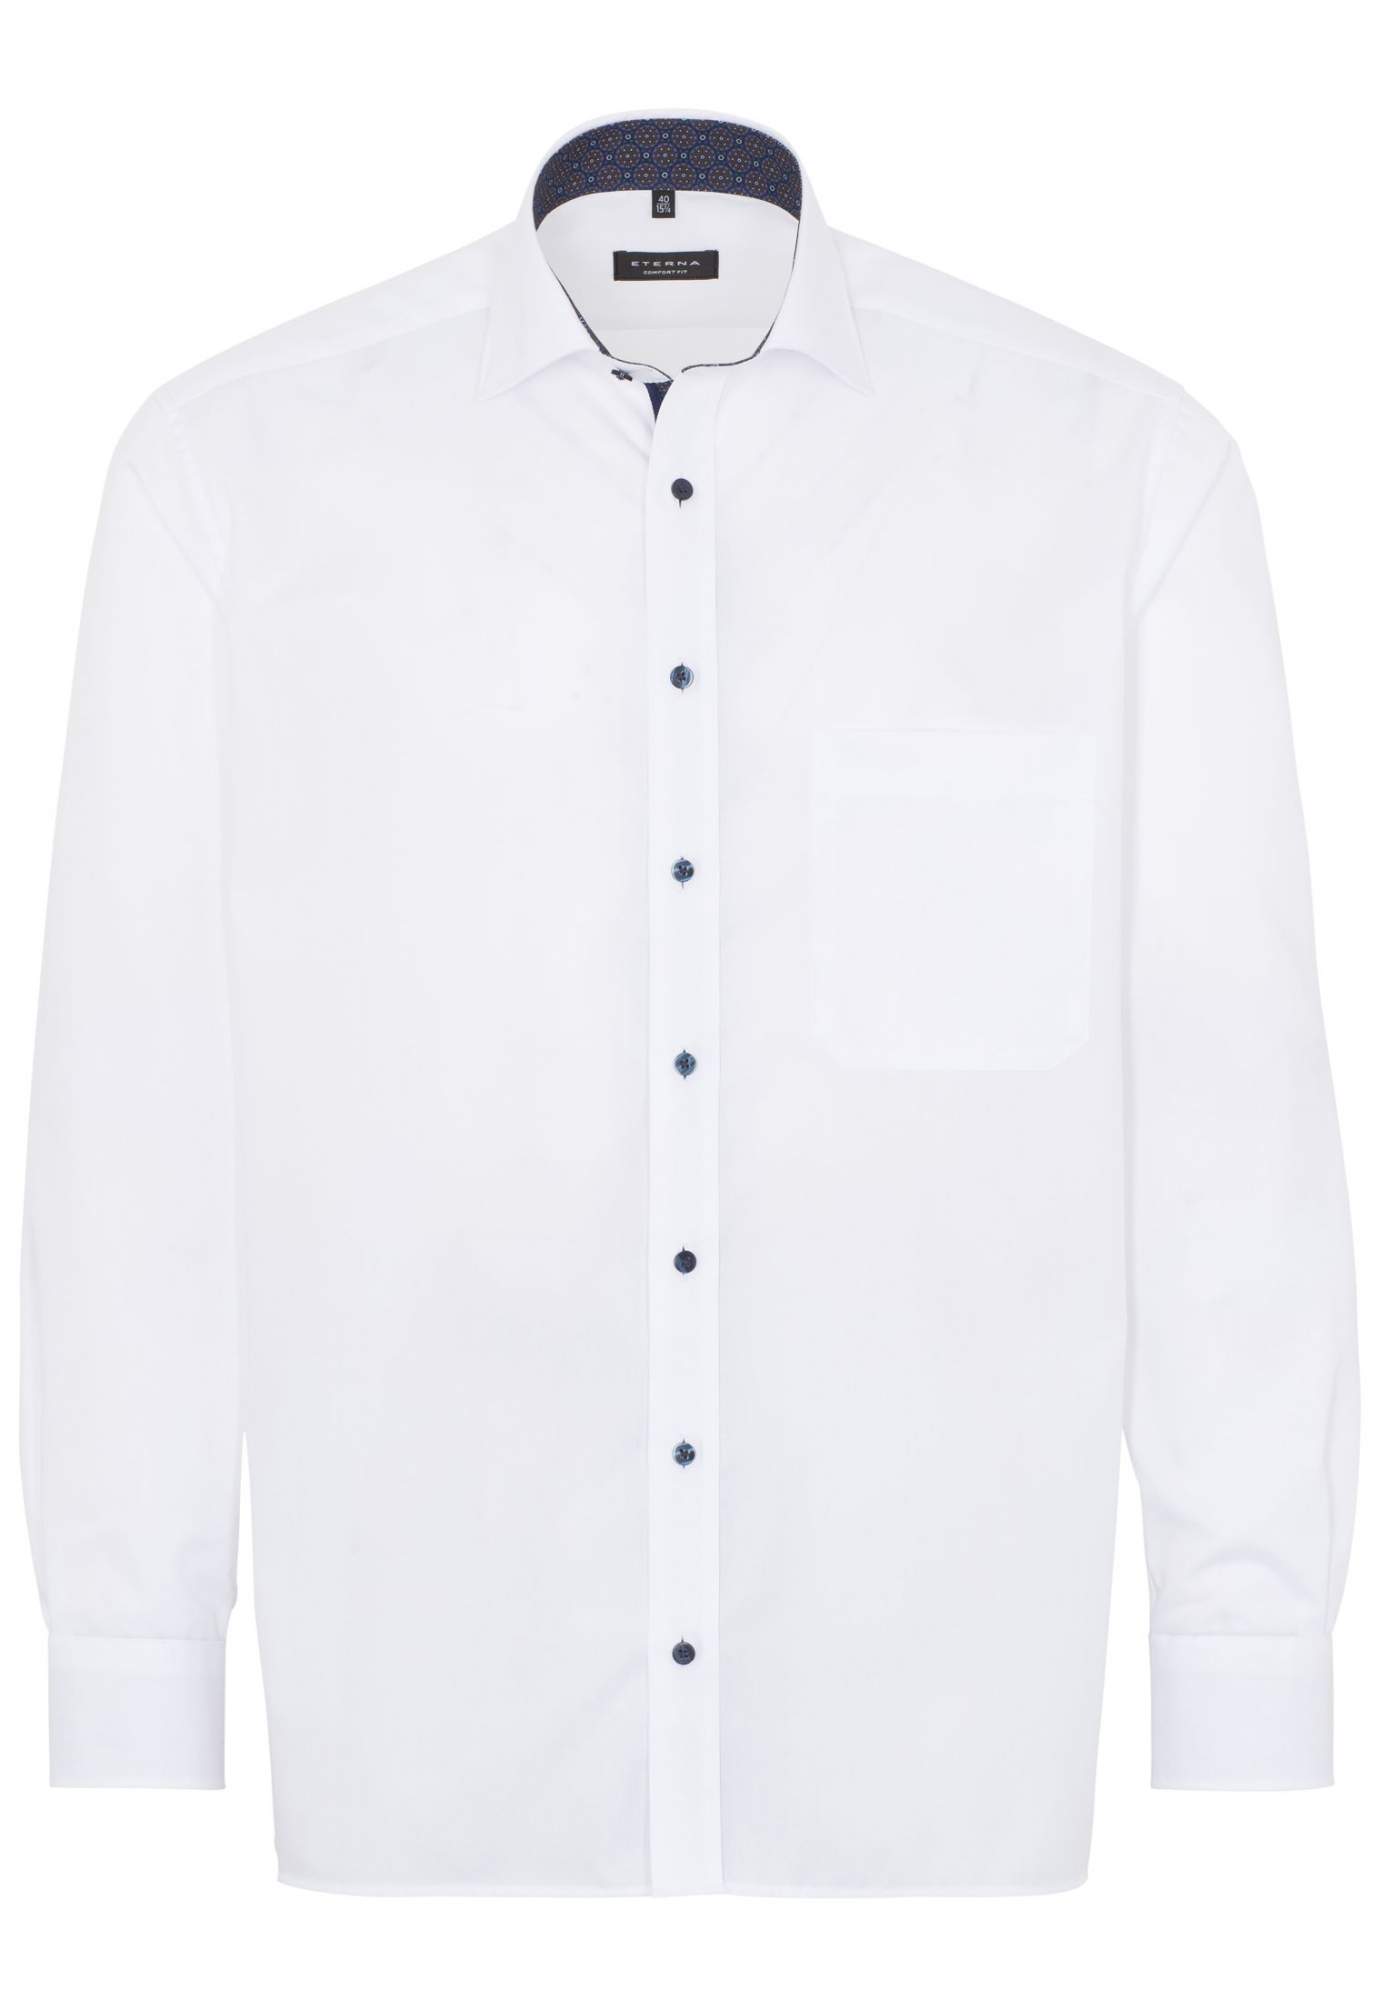 Рубашка мужская ETERNA 1303-00-E37R белая 40 - купить в Москве, цены на Мегамаркет | 600016354408